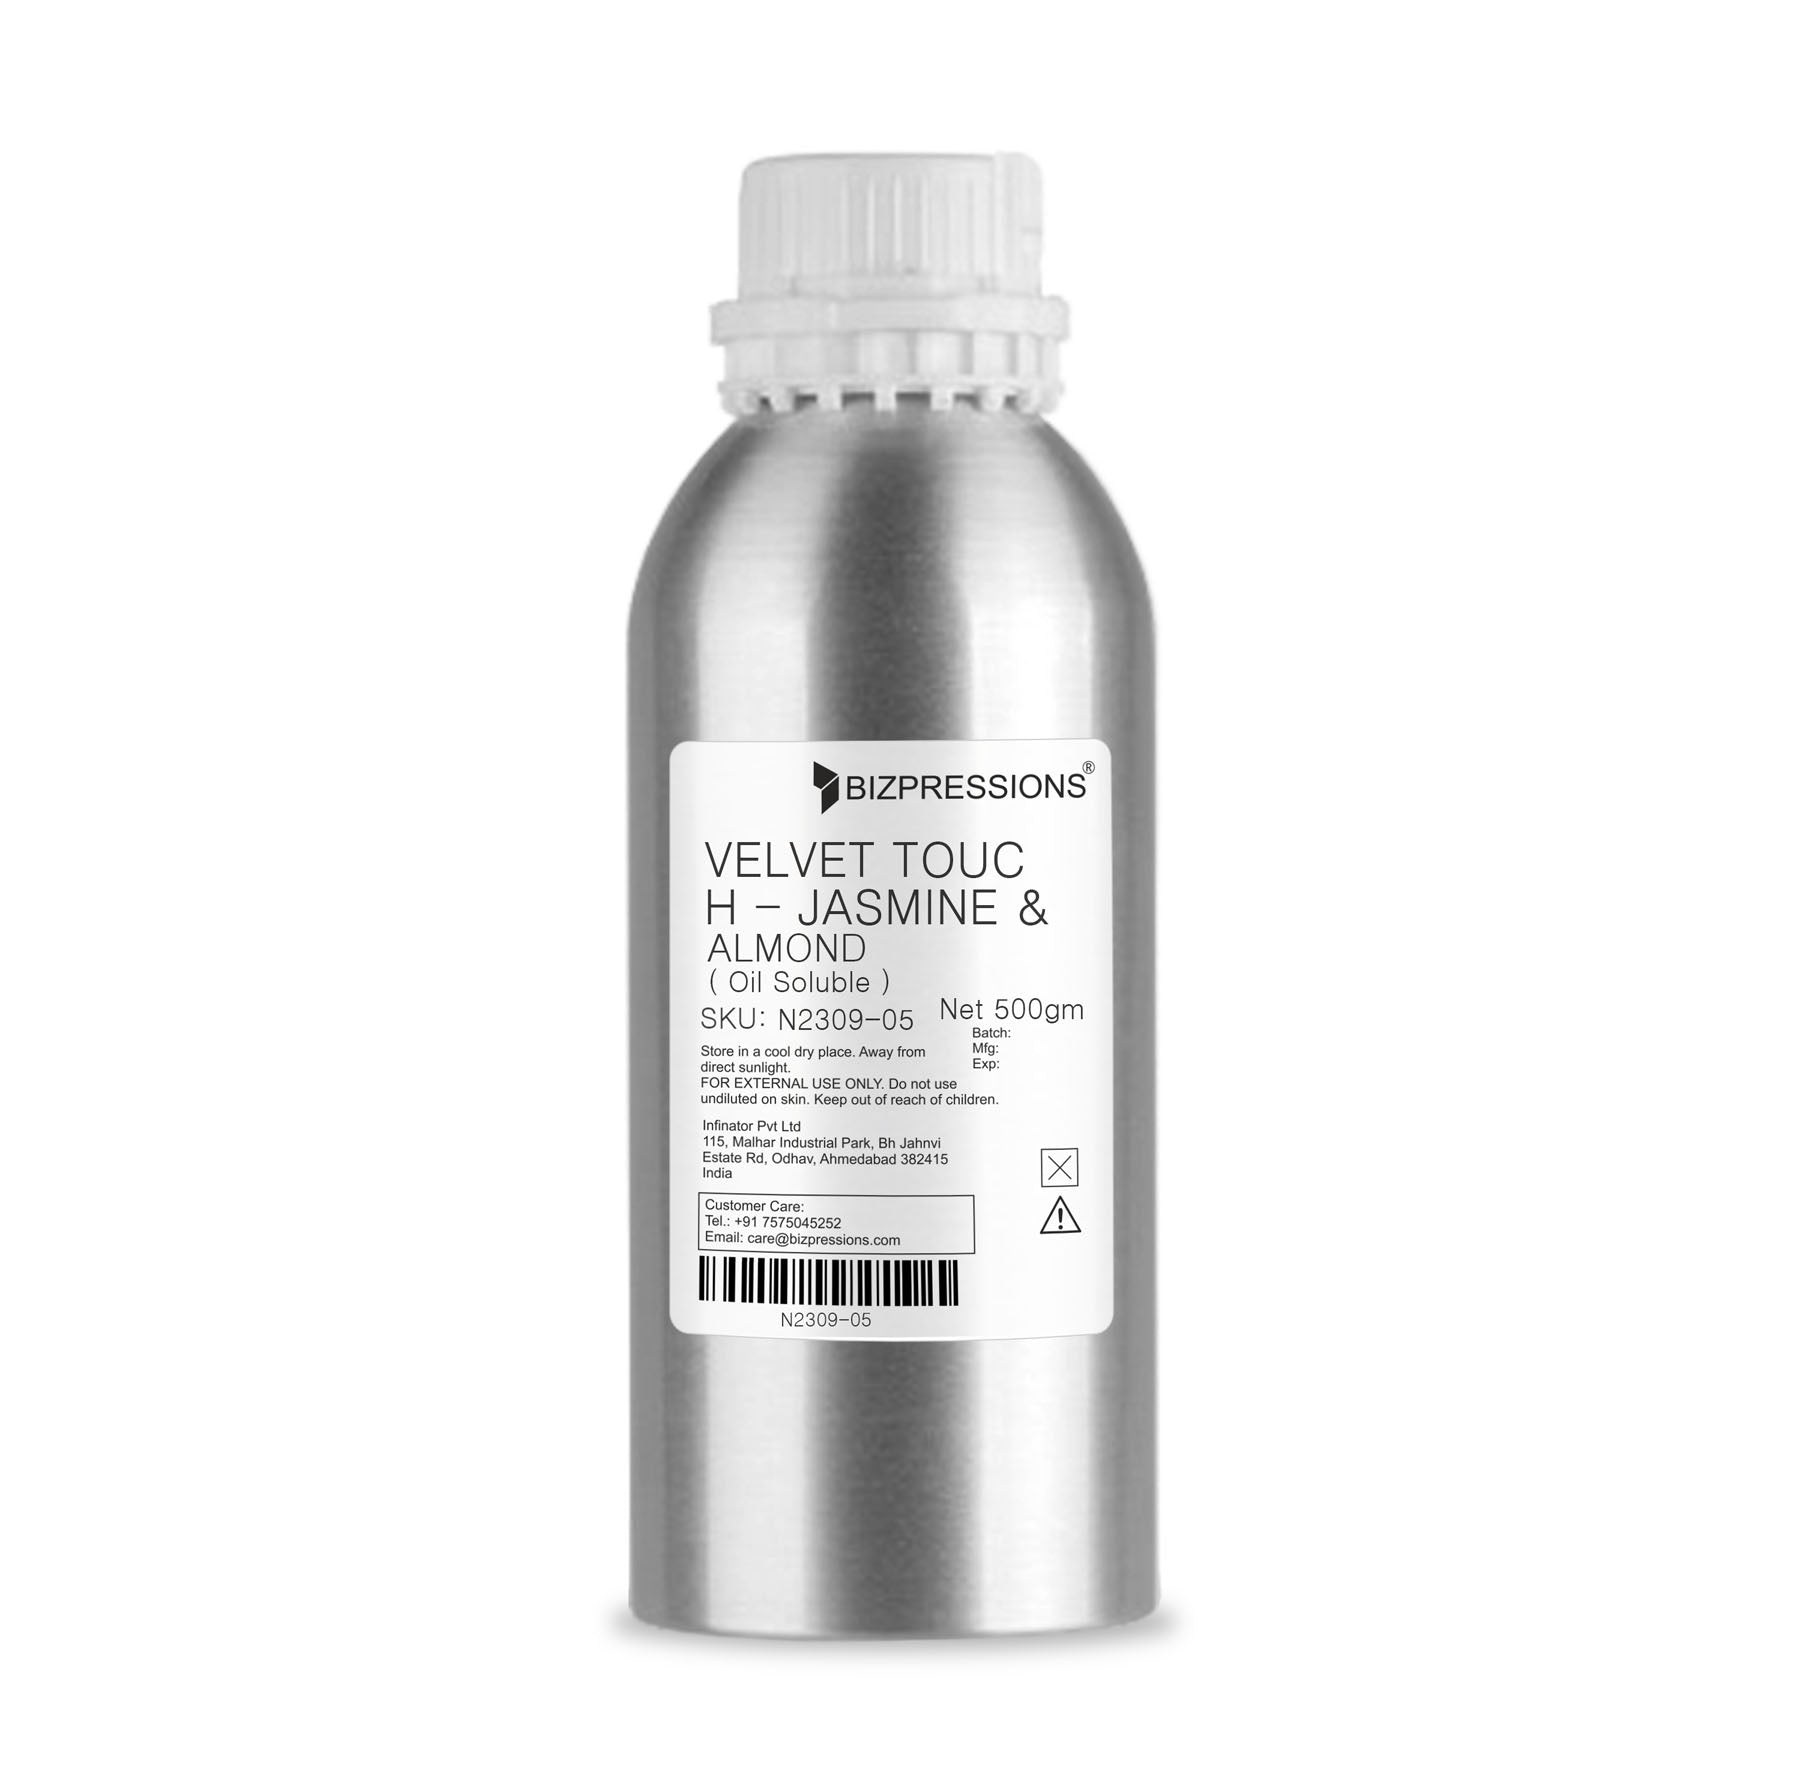 VELVET TOUCH - JASMINE & ALMOND - Fragrance ( Oil Soluble ) - 500 gm